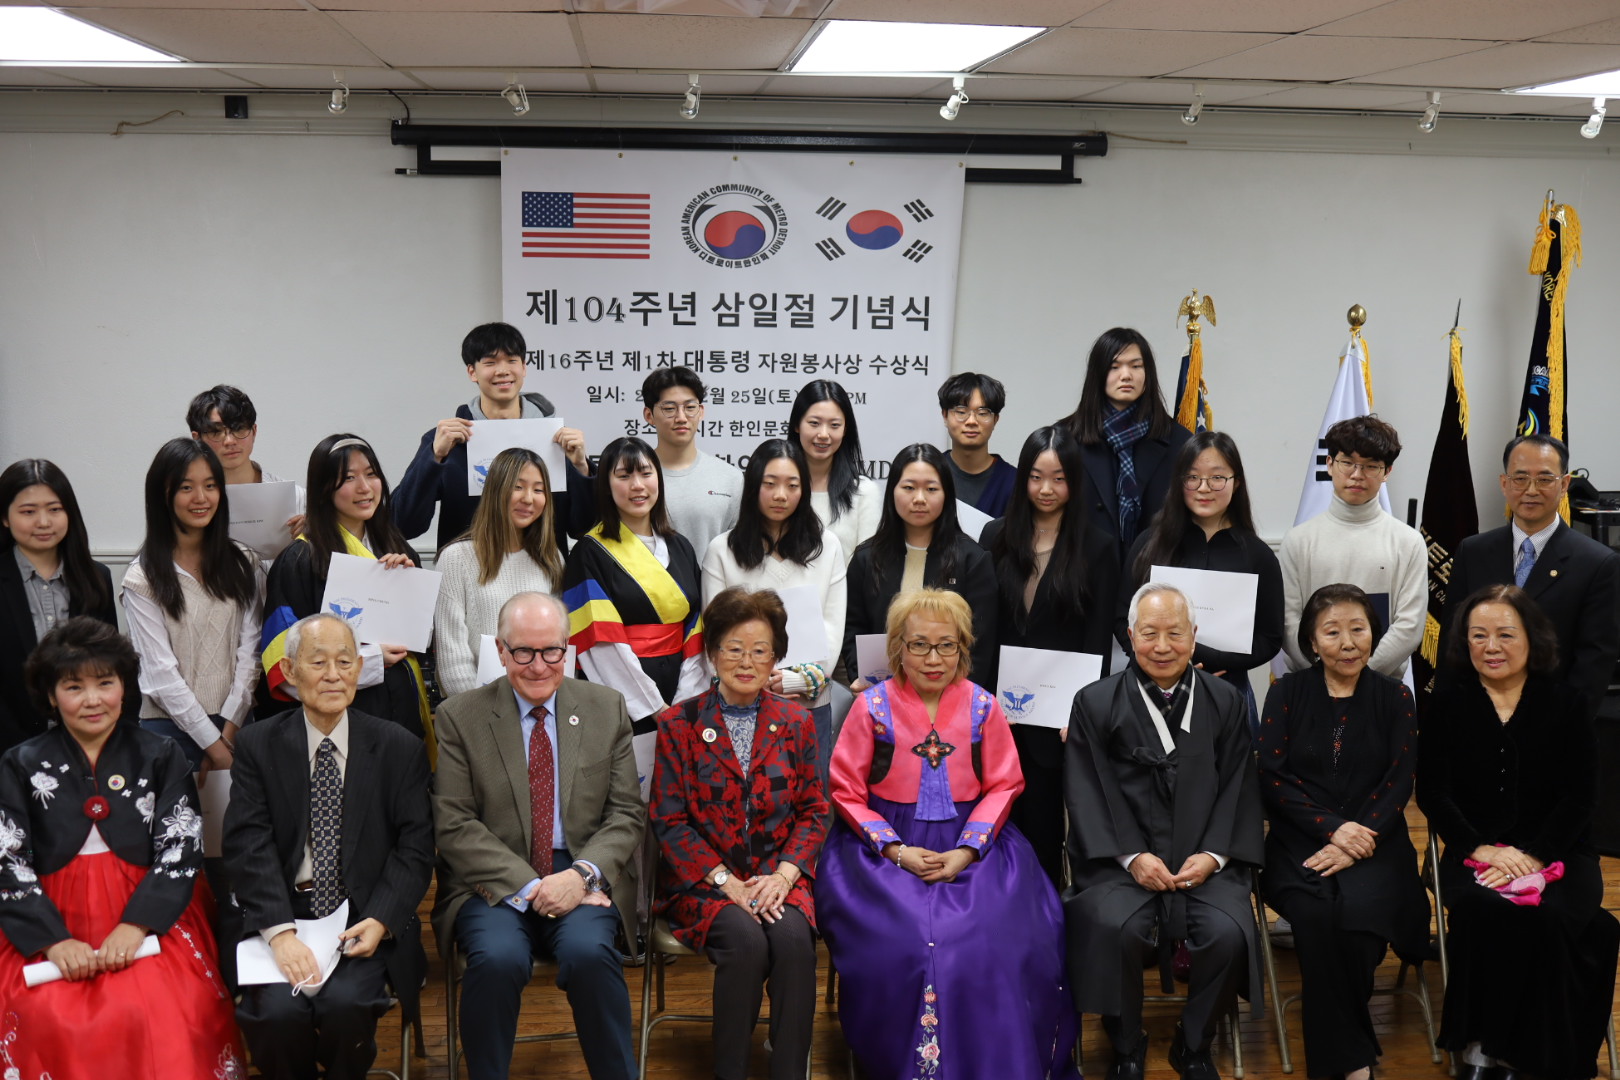 25-го числа призеры президентской награды за волонтерские работы делают памятные фотографии с руководителями и официальными лицами Корейской ассоциации.